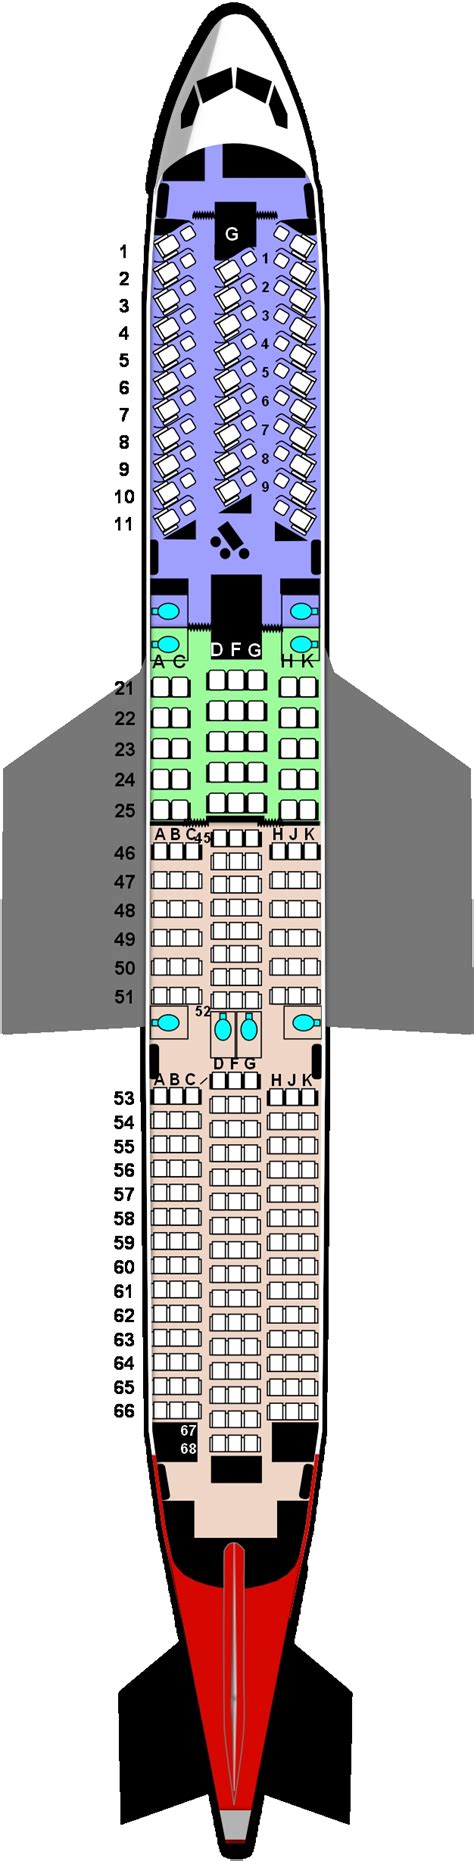 virgin atlantic airlines 787-9 seat map